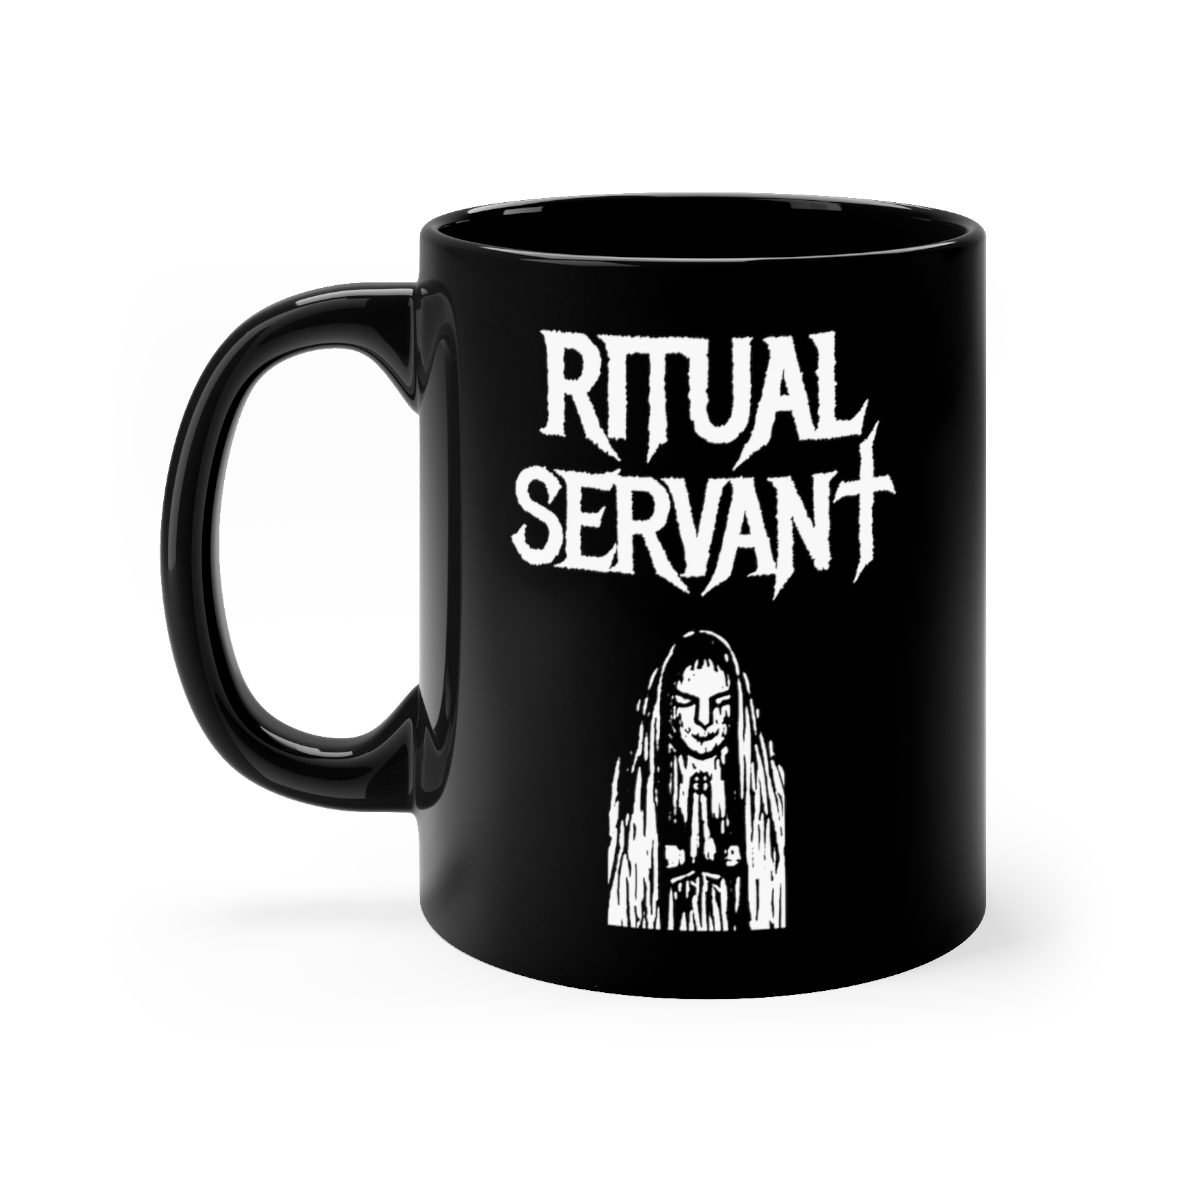 Ritual Servant Mascot Black mug 11oz